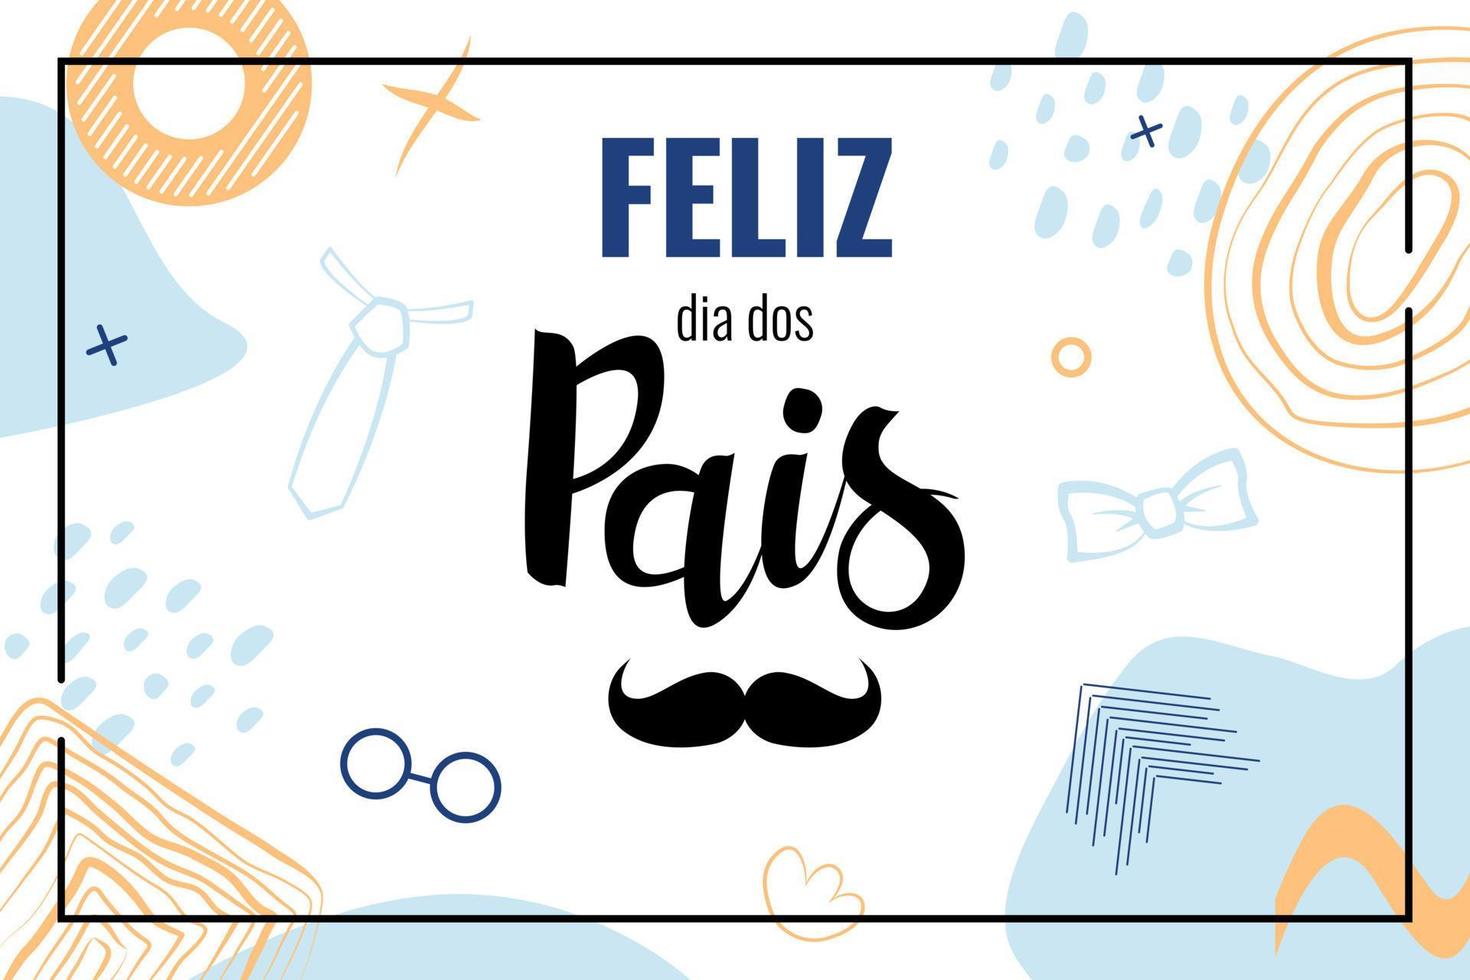 feliz dia dos pais significa feliz dia dos pais no brasil. banner com